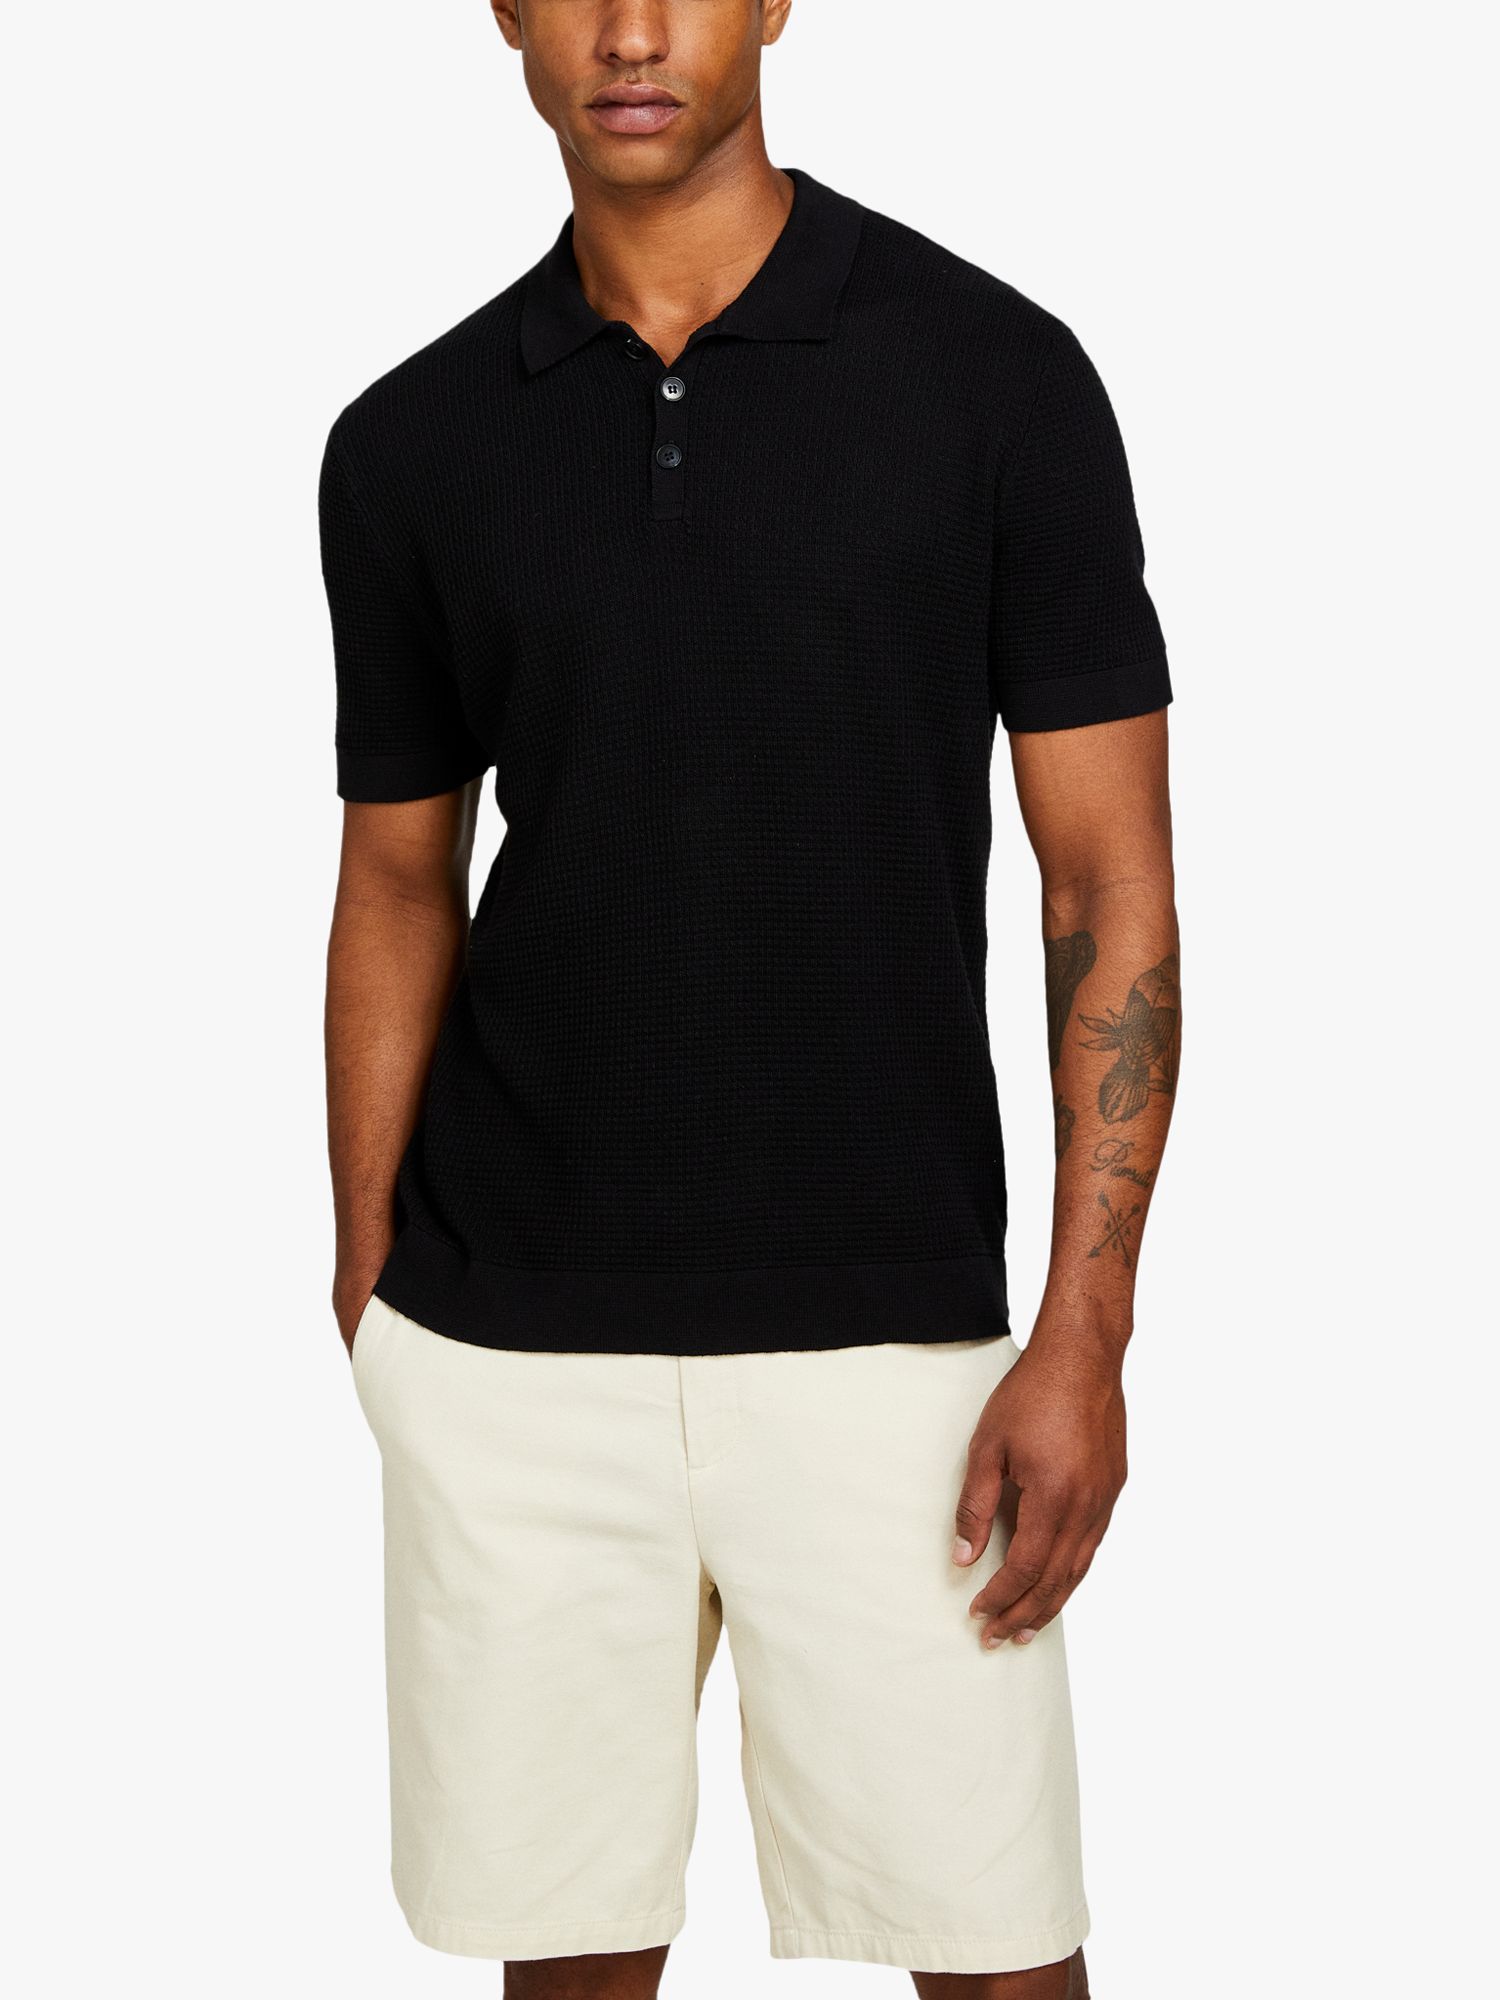 SISLEY Knitted Linen Blend Polo Shirt, Black, S